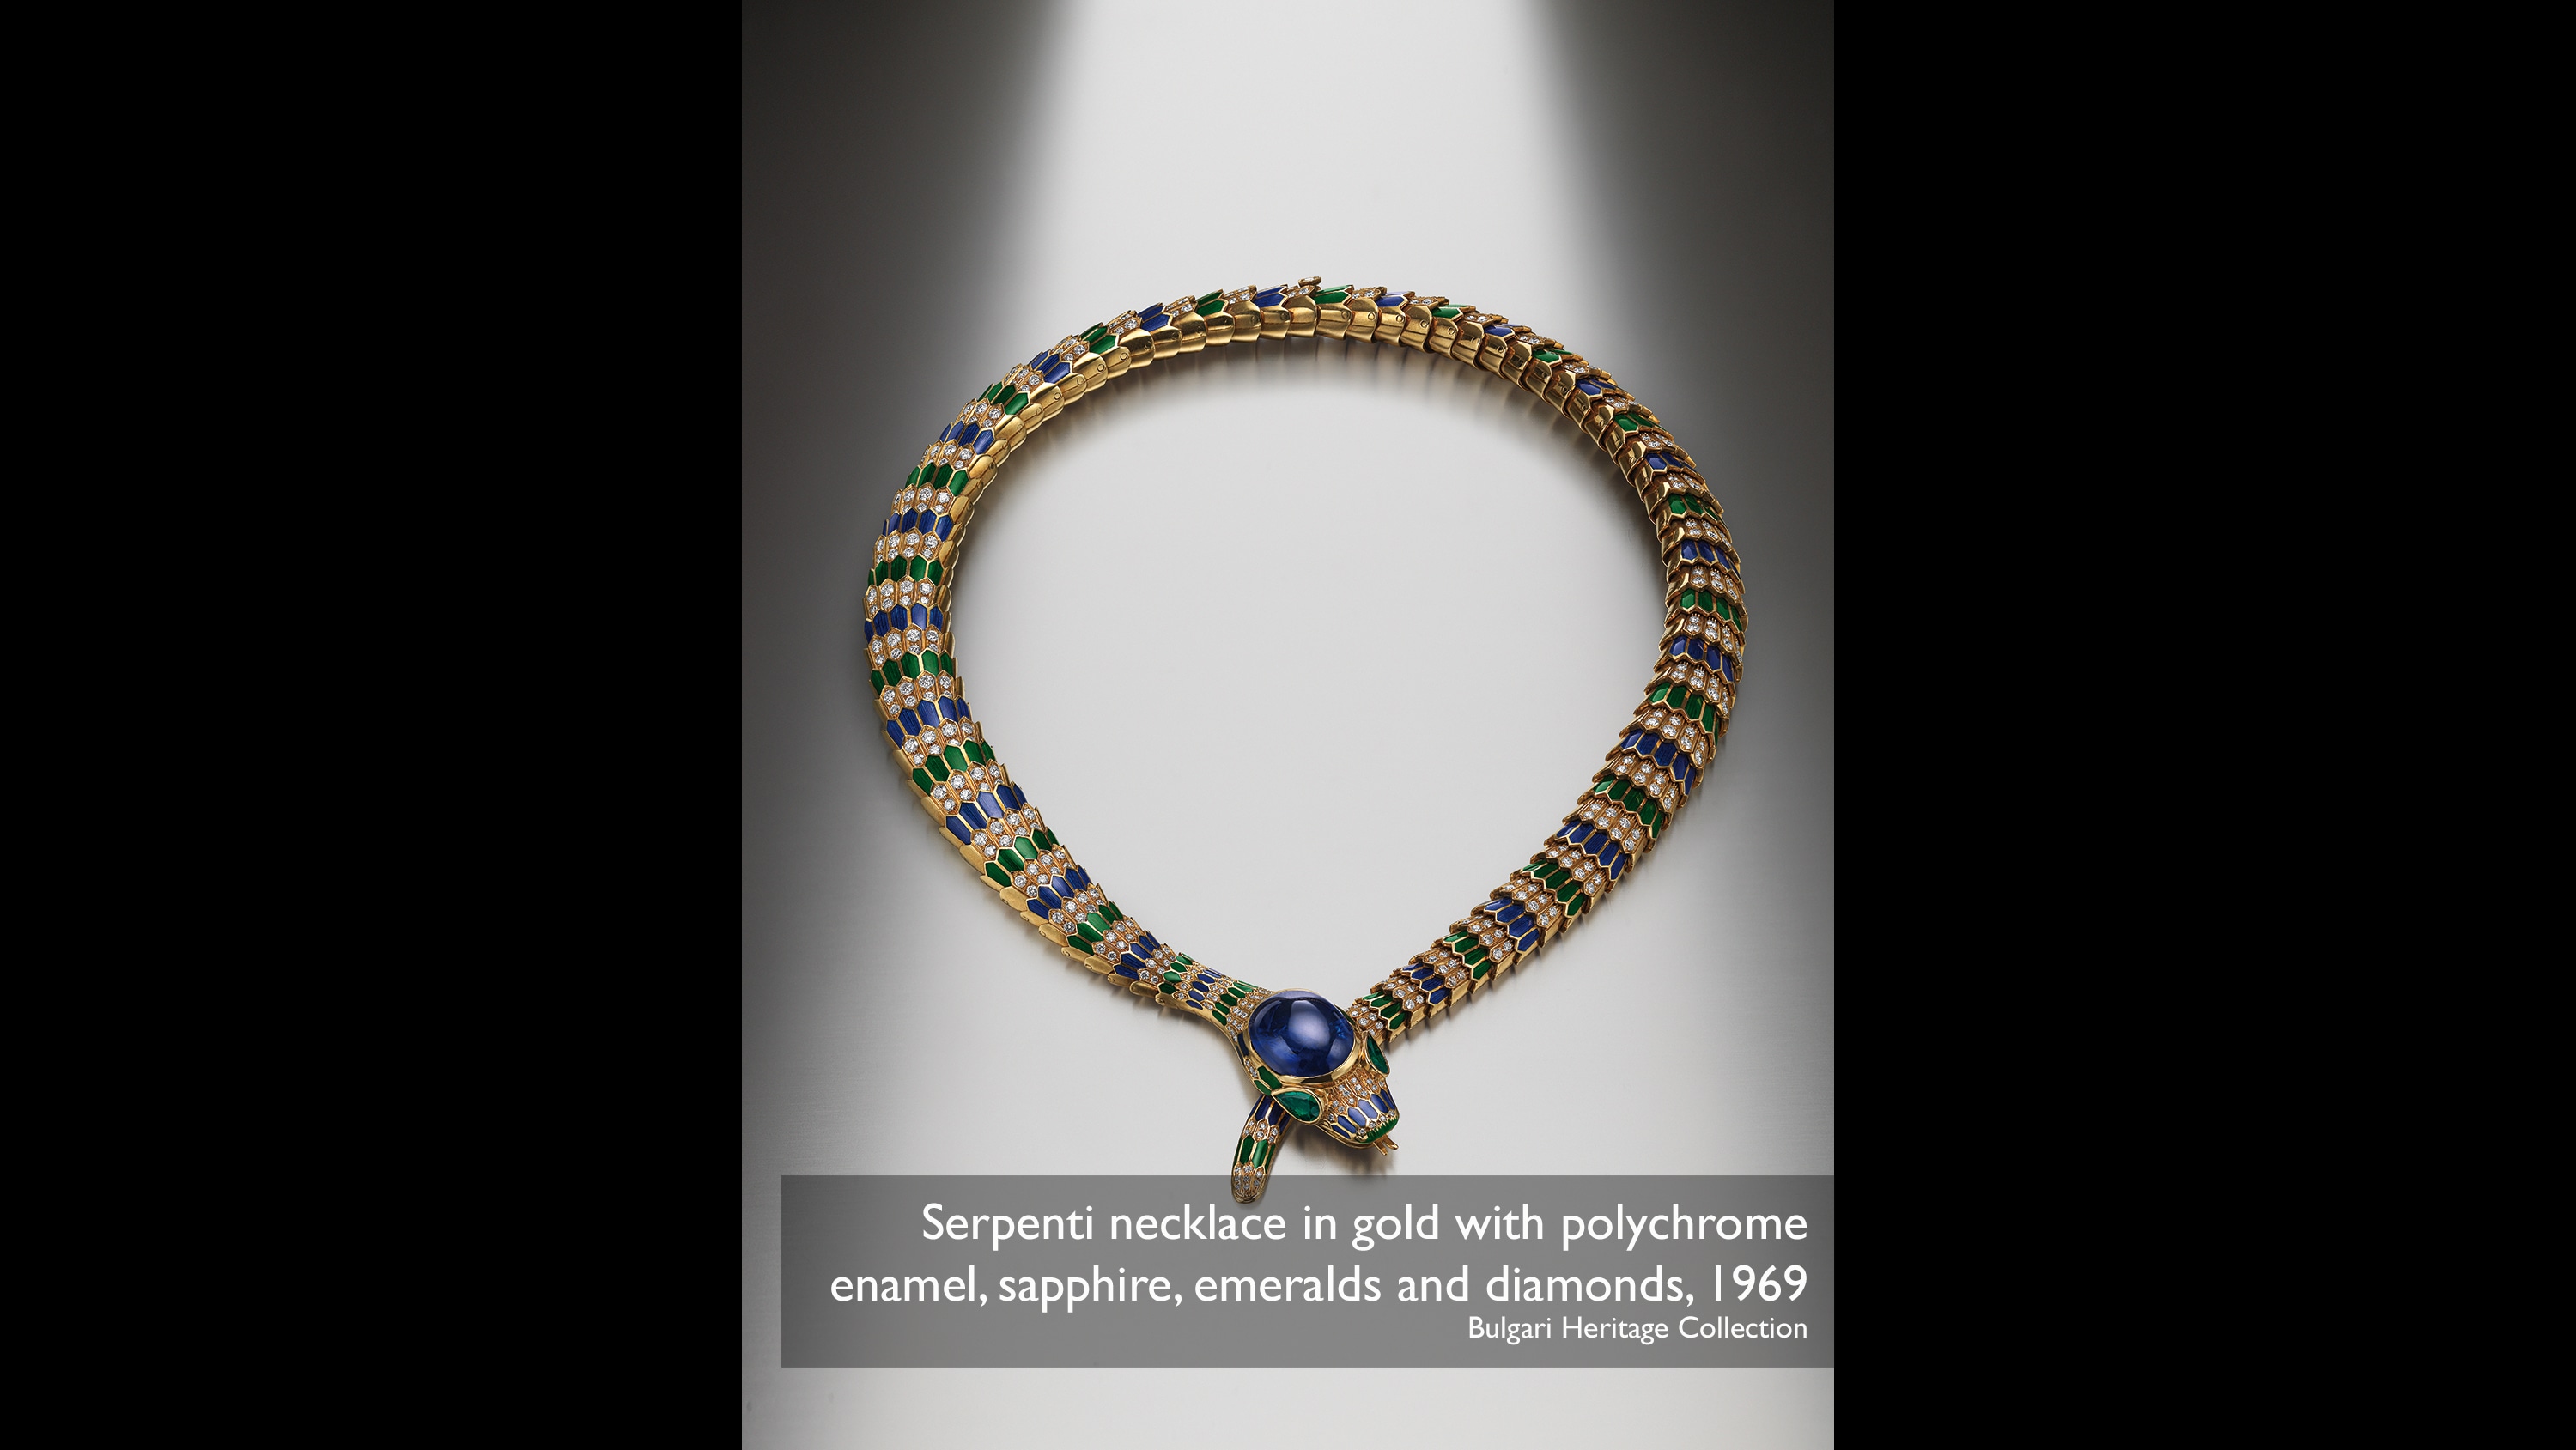 Kalung emas Serpenti dengan enamel polikrom, batu safir, zamrud, dan berlian, Bulgari Heritage Collection 1969